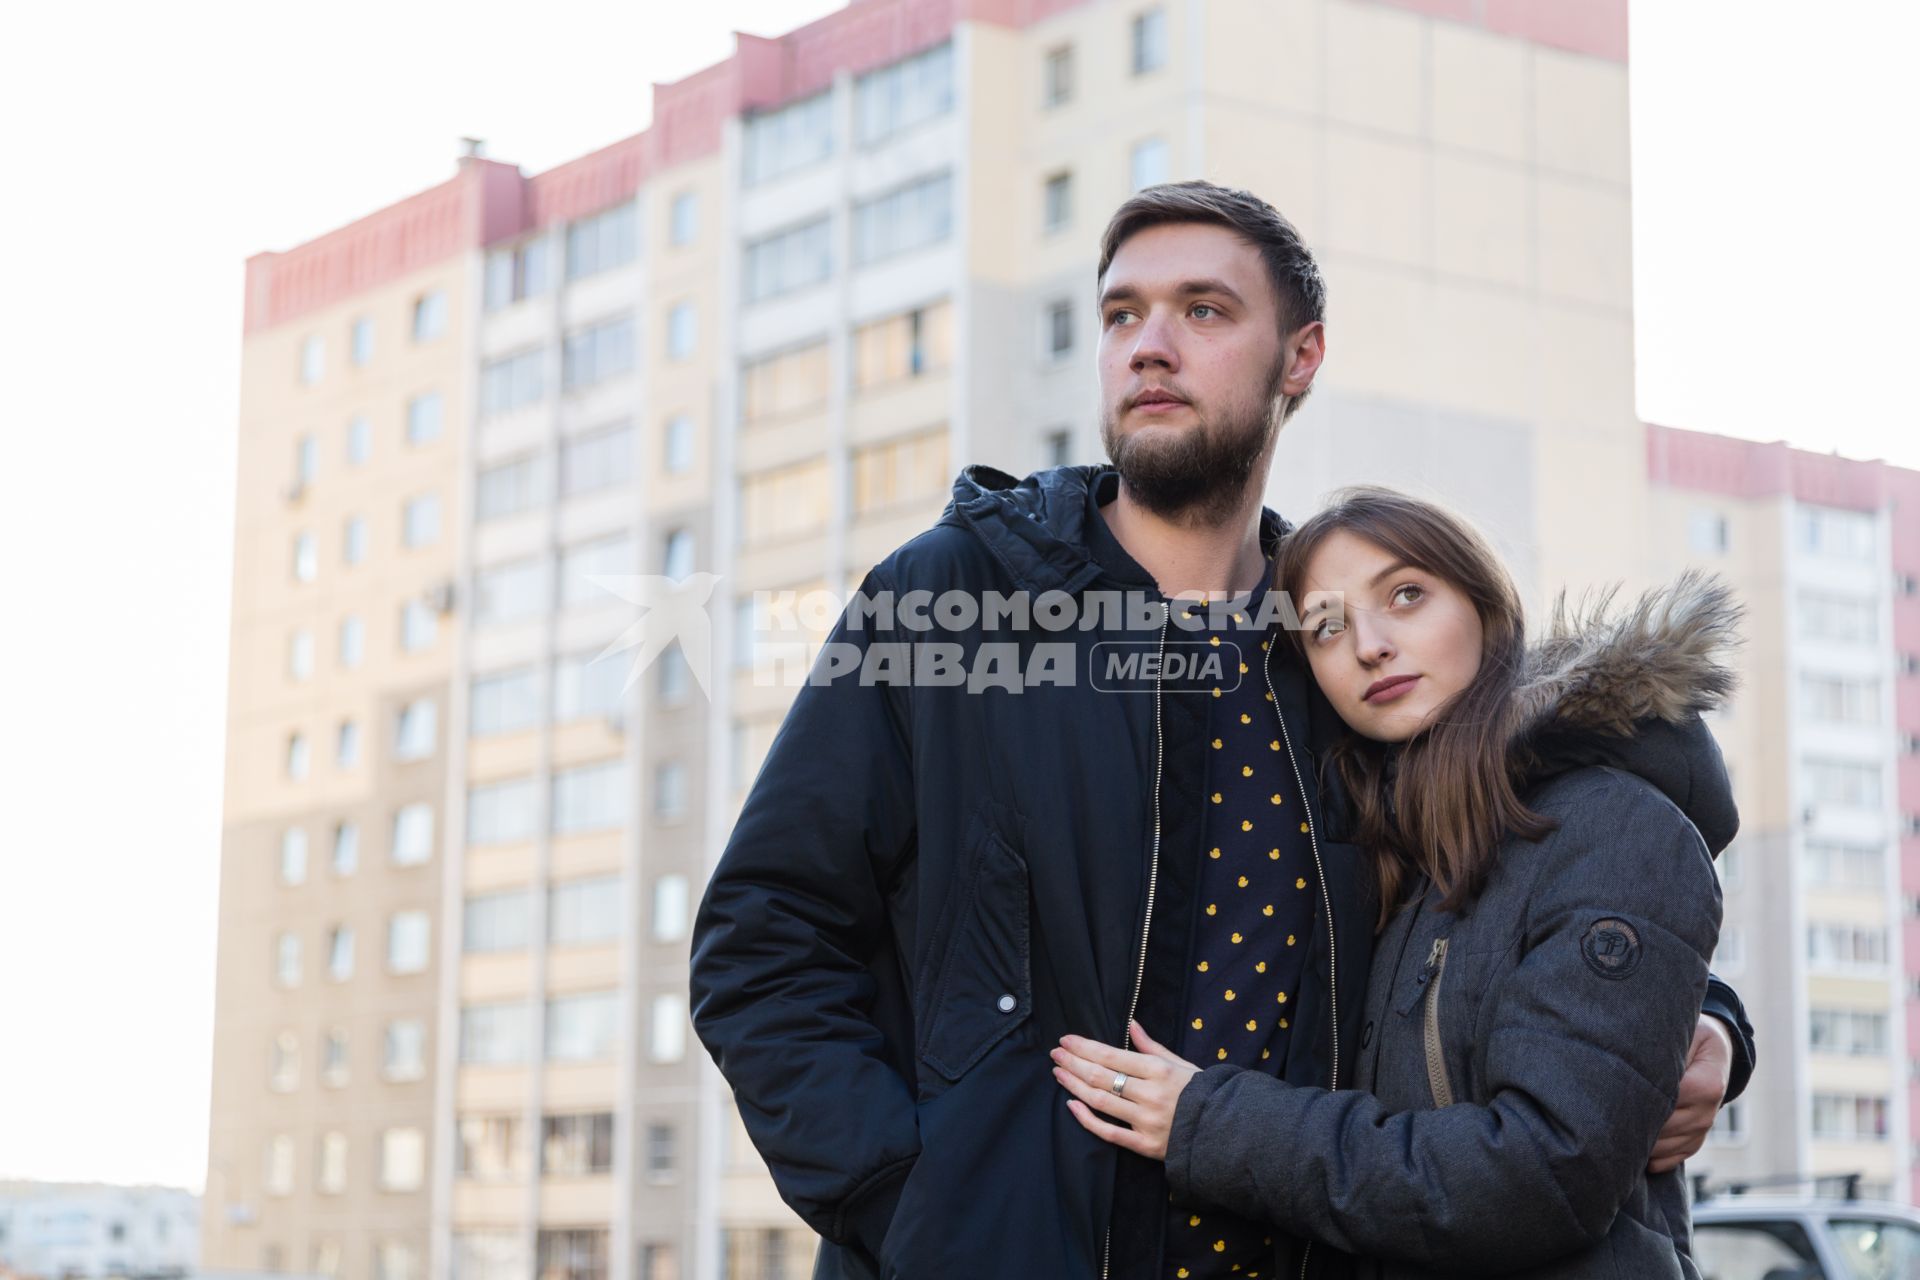 Челябинск.   Молодой человек и девушка у жилого многоэтажного дома.